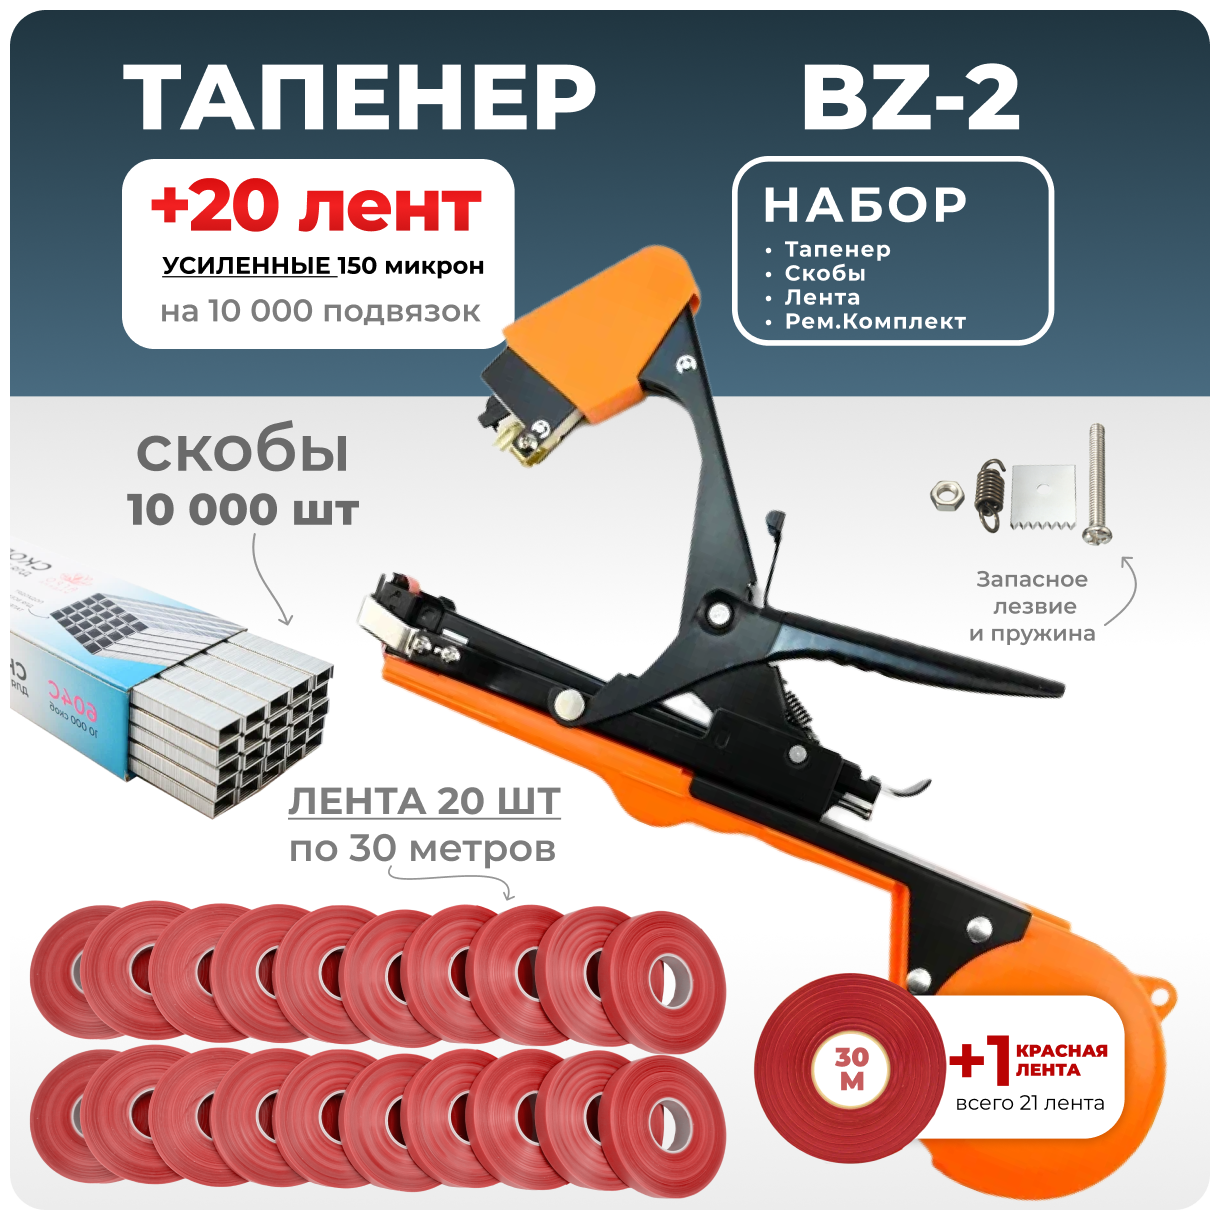 Тапенер для подвязки Bz-2 + 20 красных лент + скобы Агромадана 10.000 шт + ремкомплект / Готовый комплект для подвязки